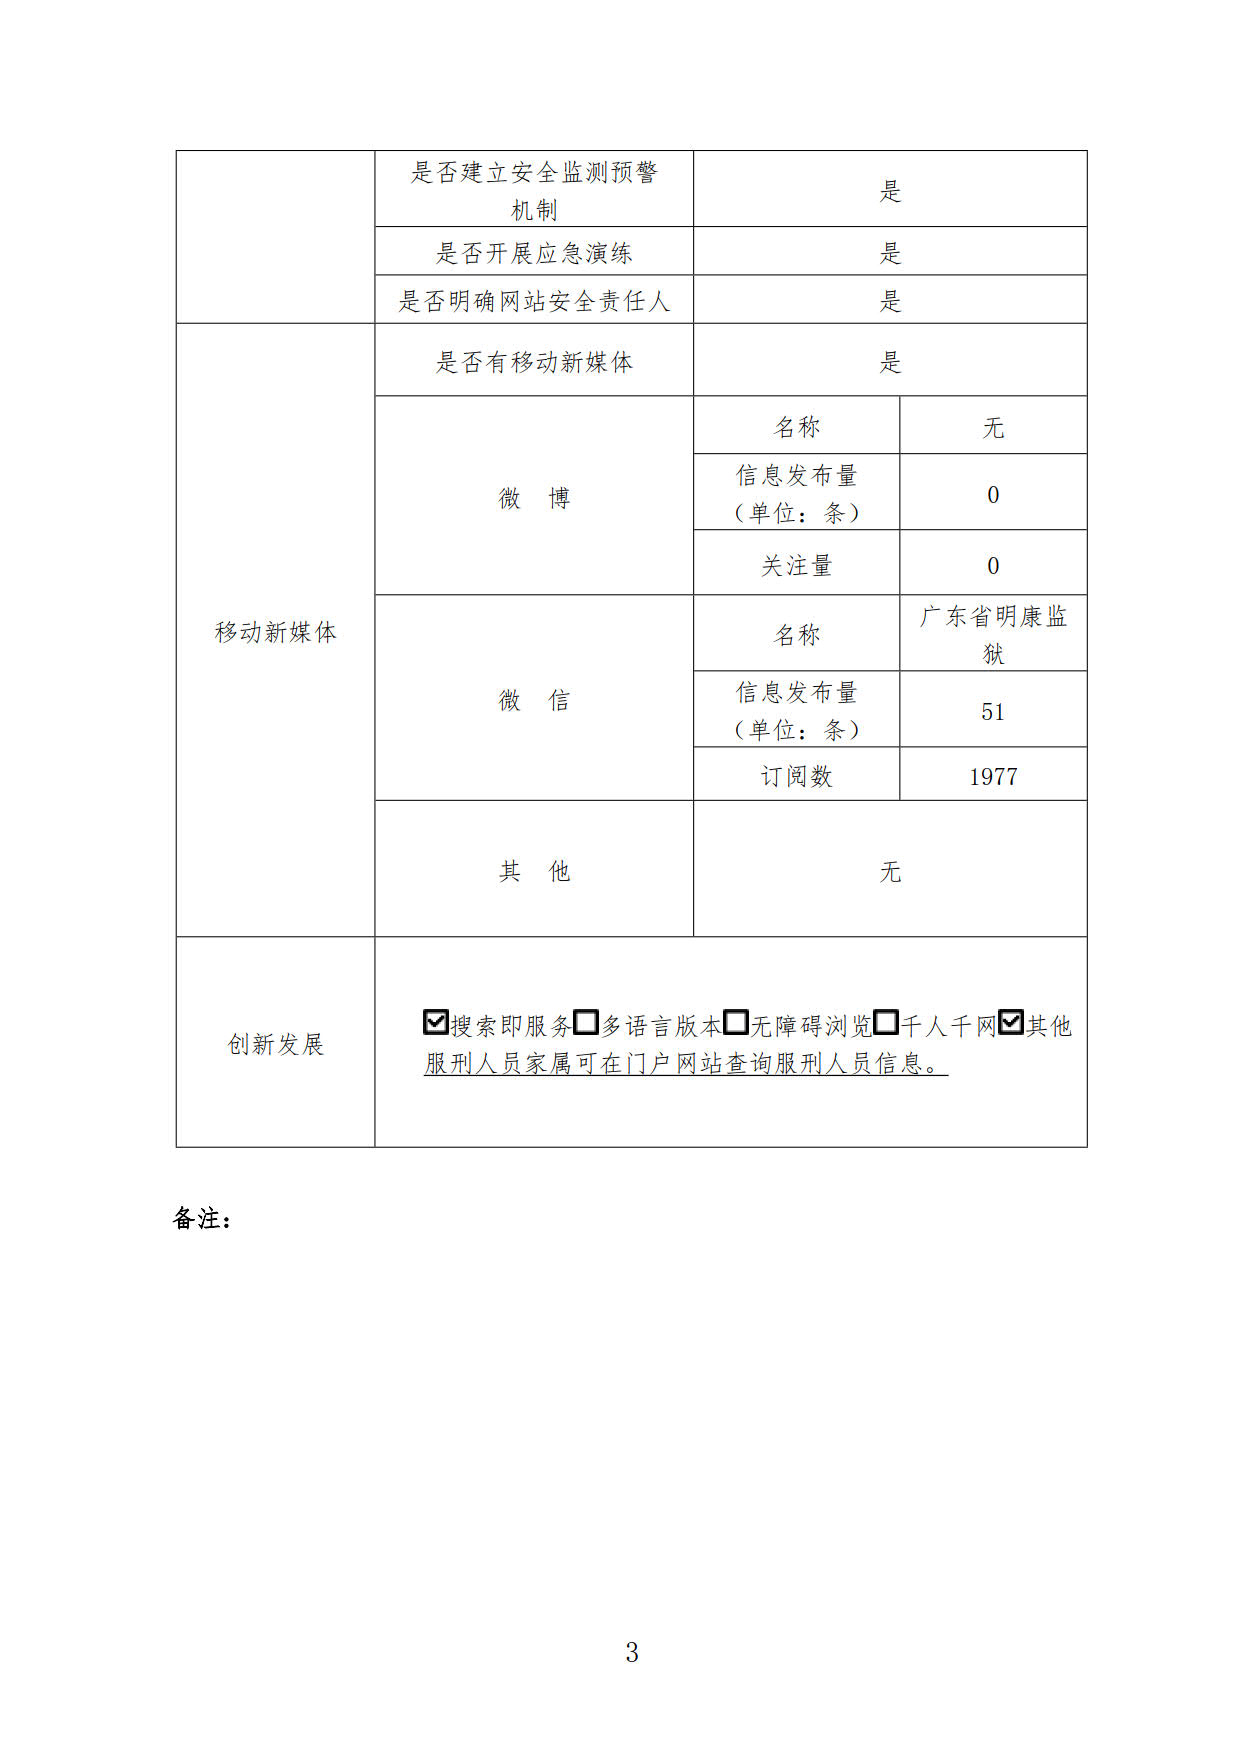 广东省明康监狱2018年政府网站工作年度报表3.jpg